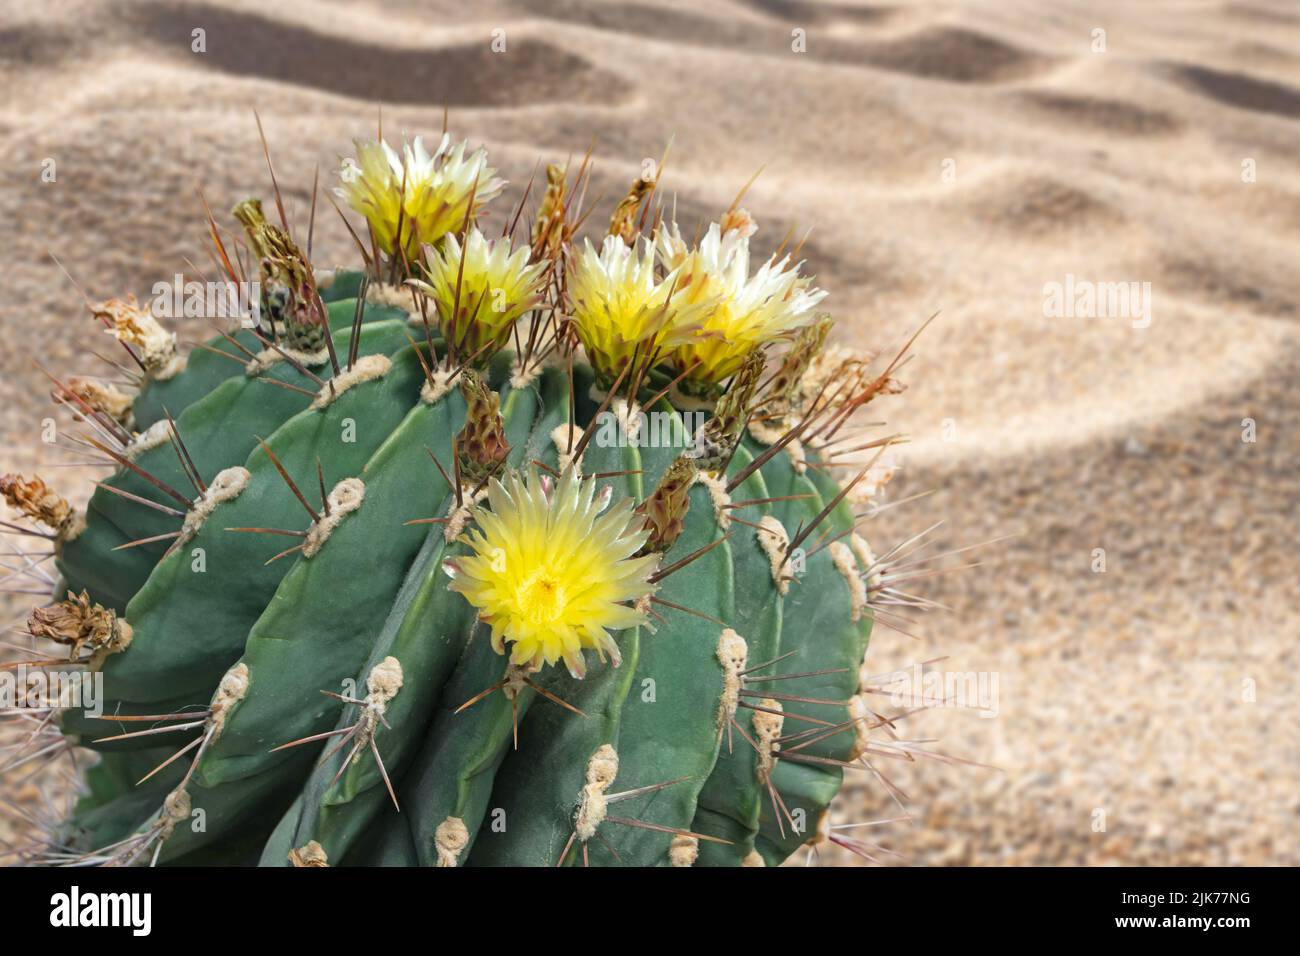 Cactus fiorito con fiori gialli nel deserto di sabbia. Pianta succulenta globulare decorativa. Foto Stock